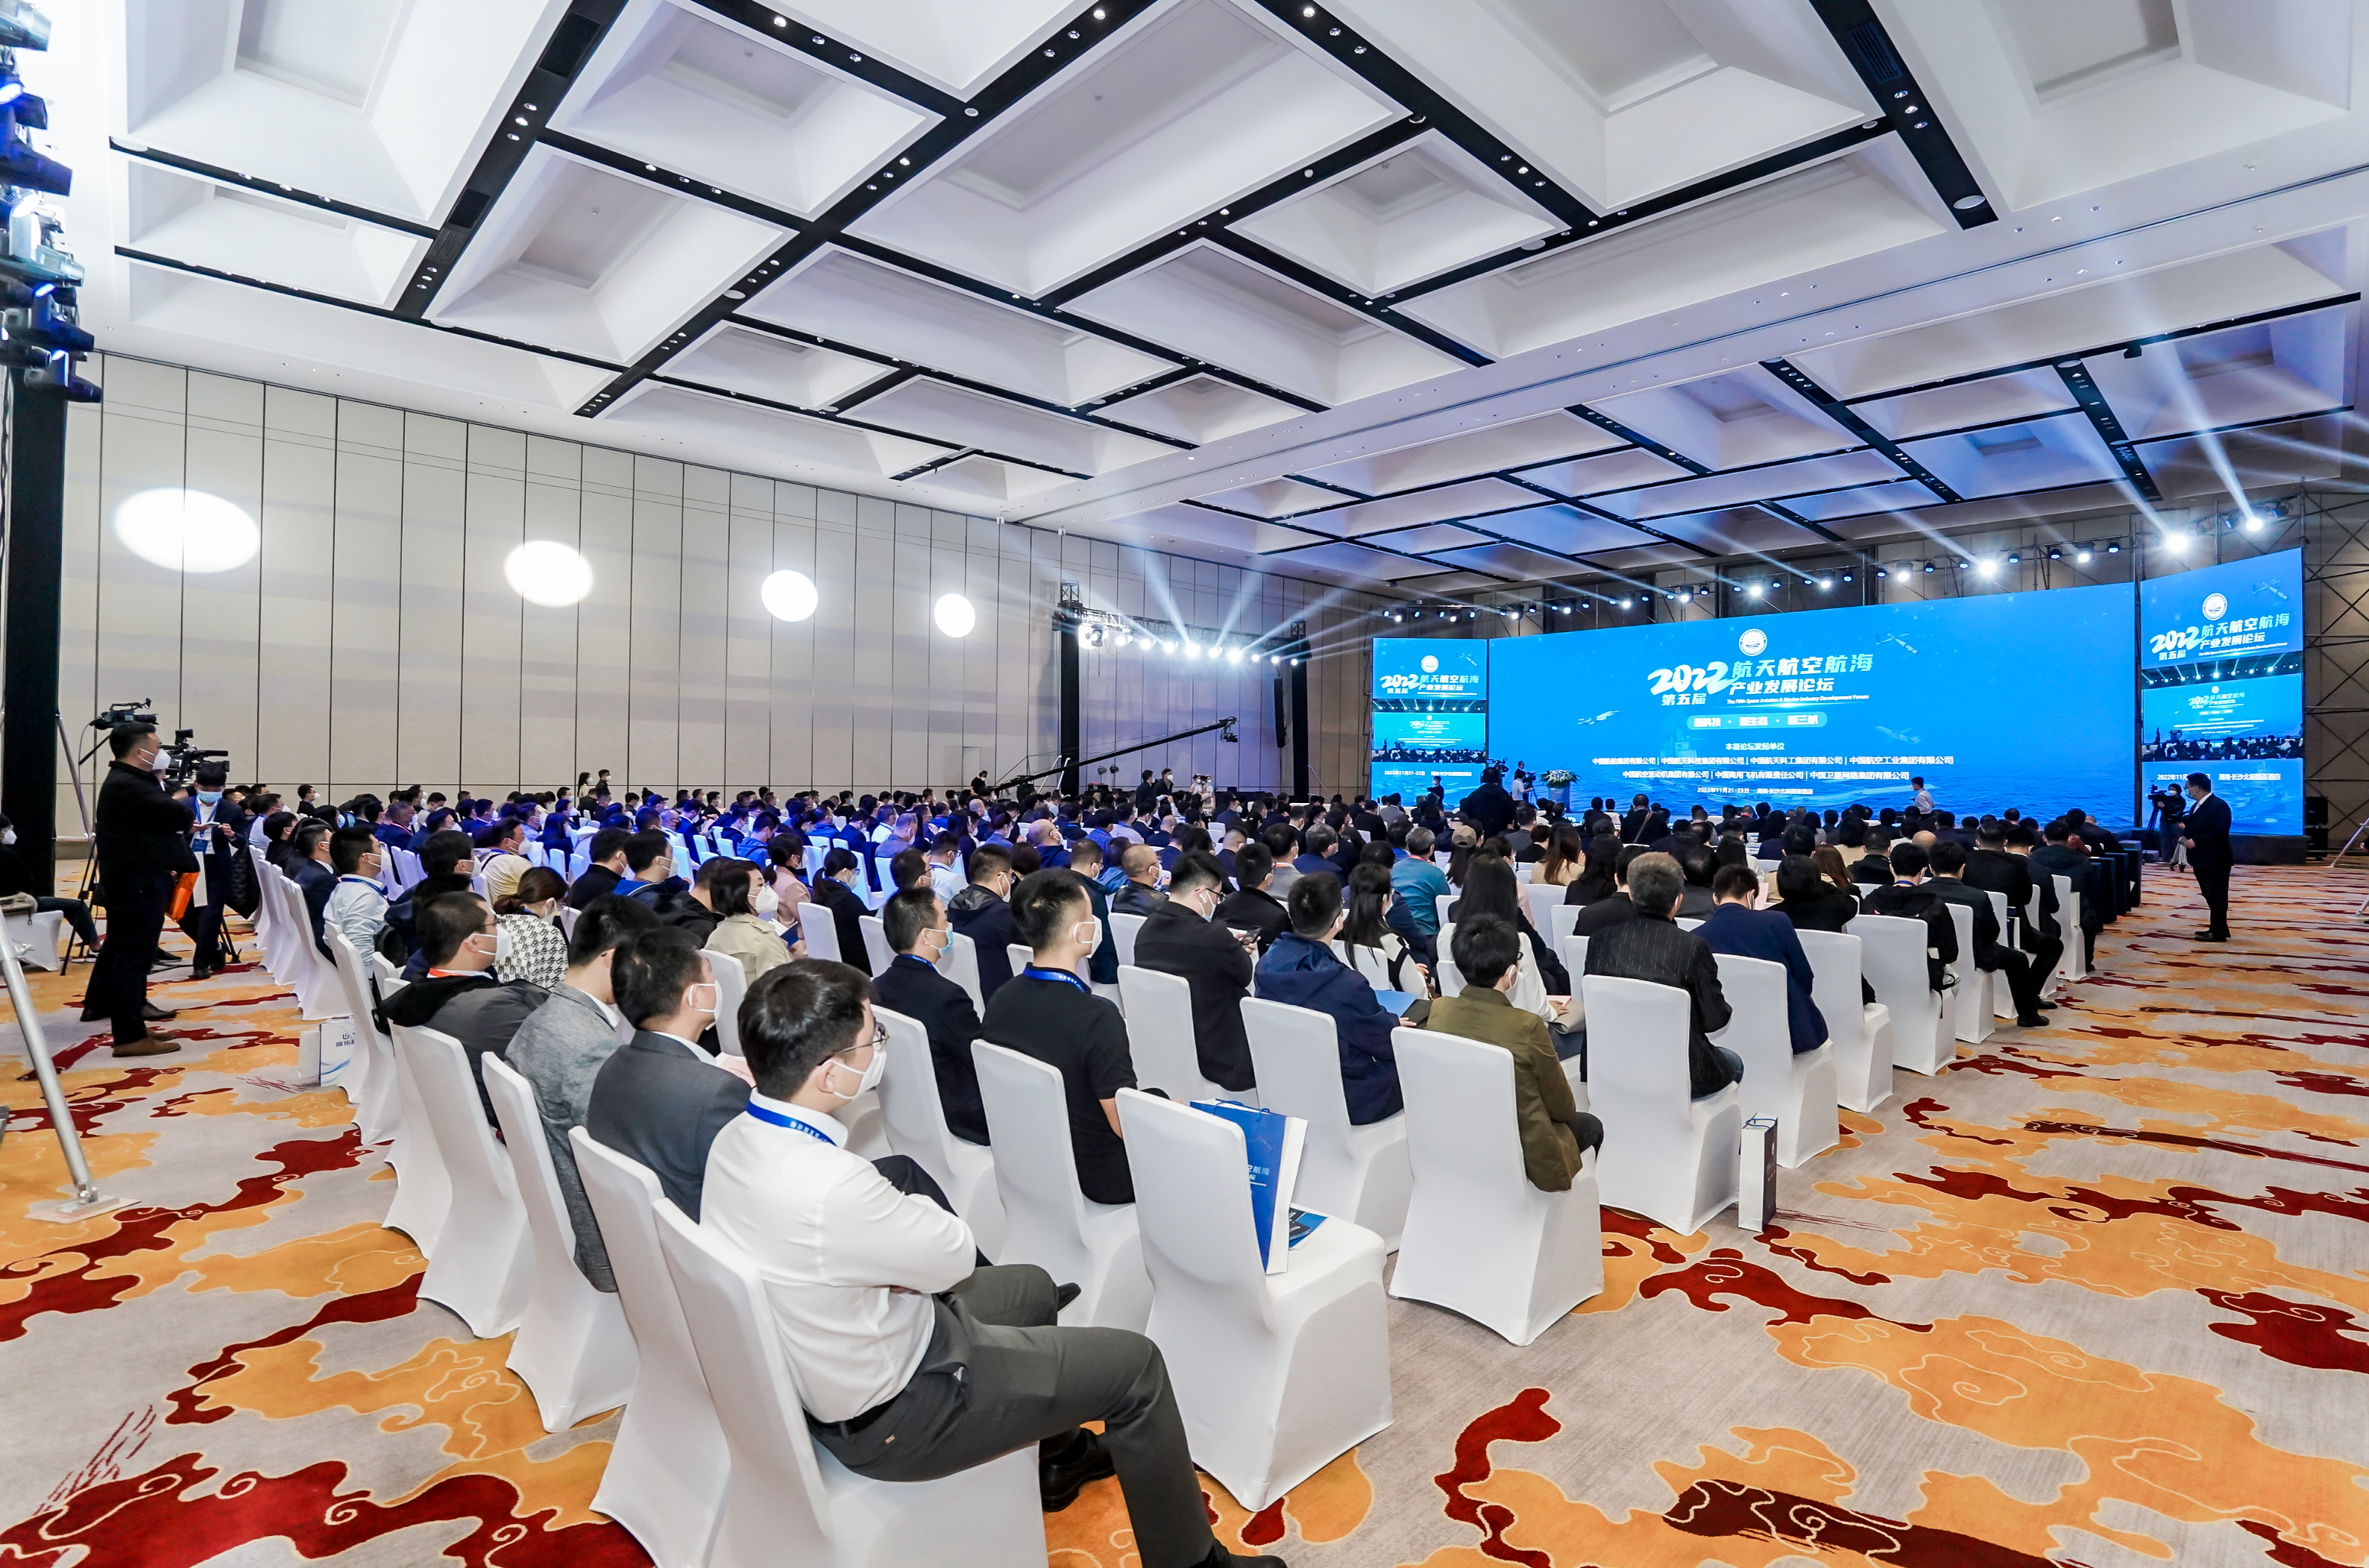 新科技、新生態、新三航 | W88中文亮相2022第五屆航天航空航海產業發展論壇